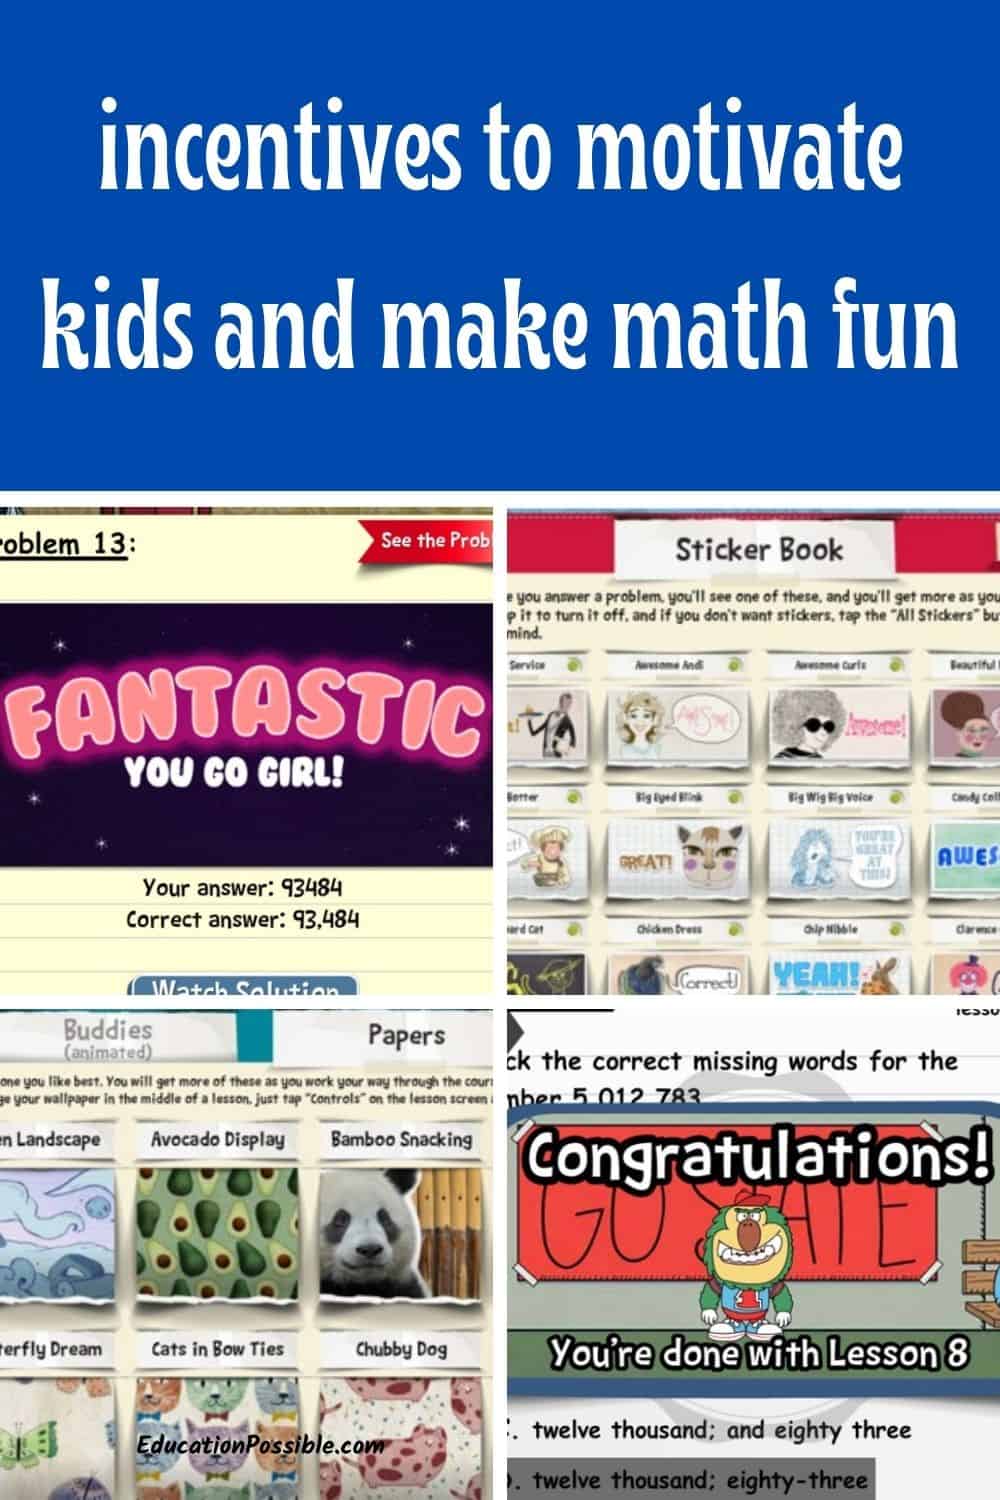 Screenshots of virtual incentives from an online math program.